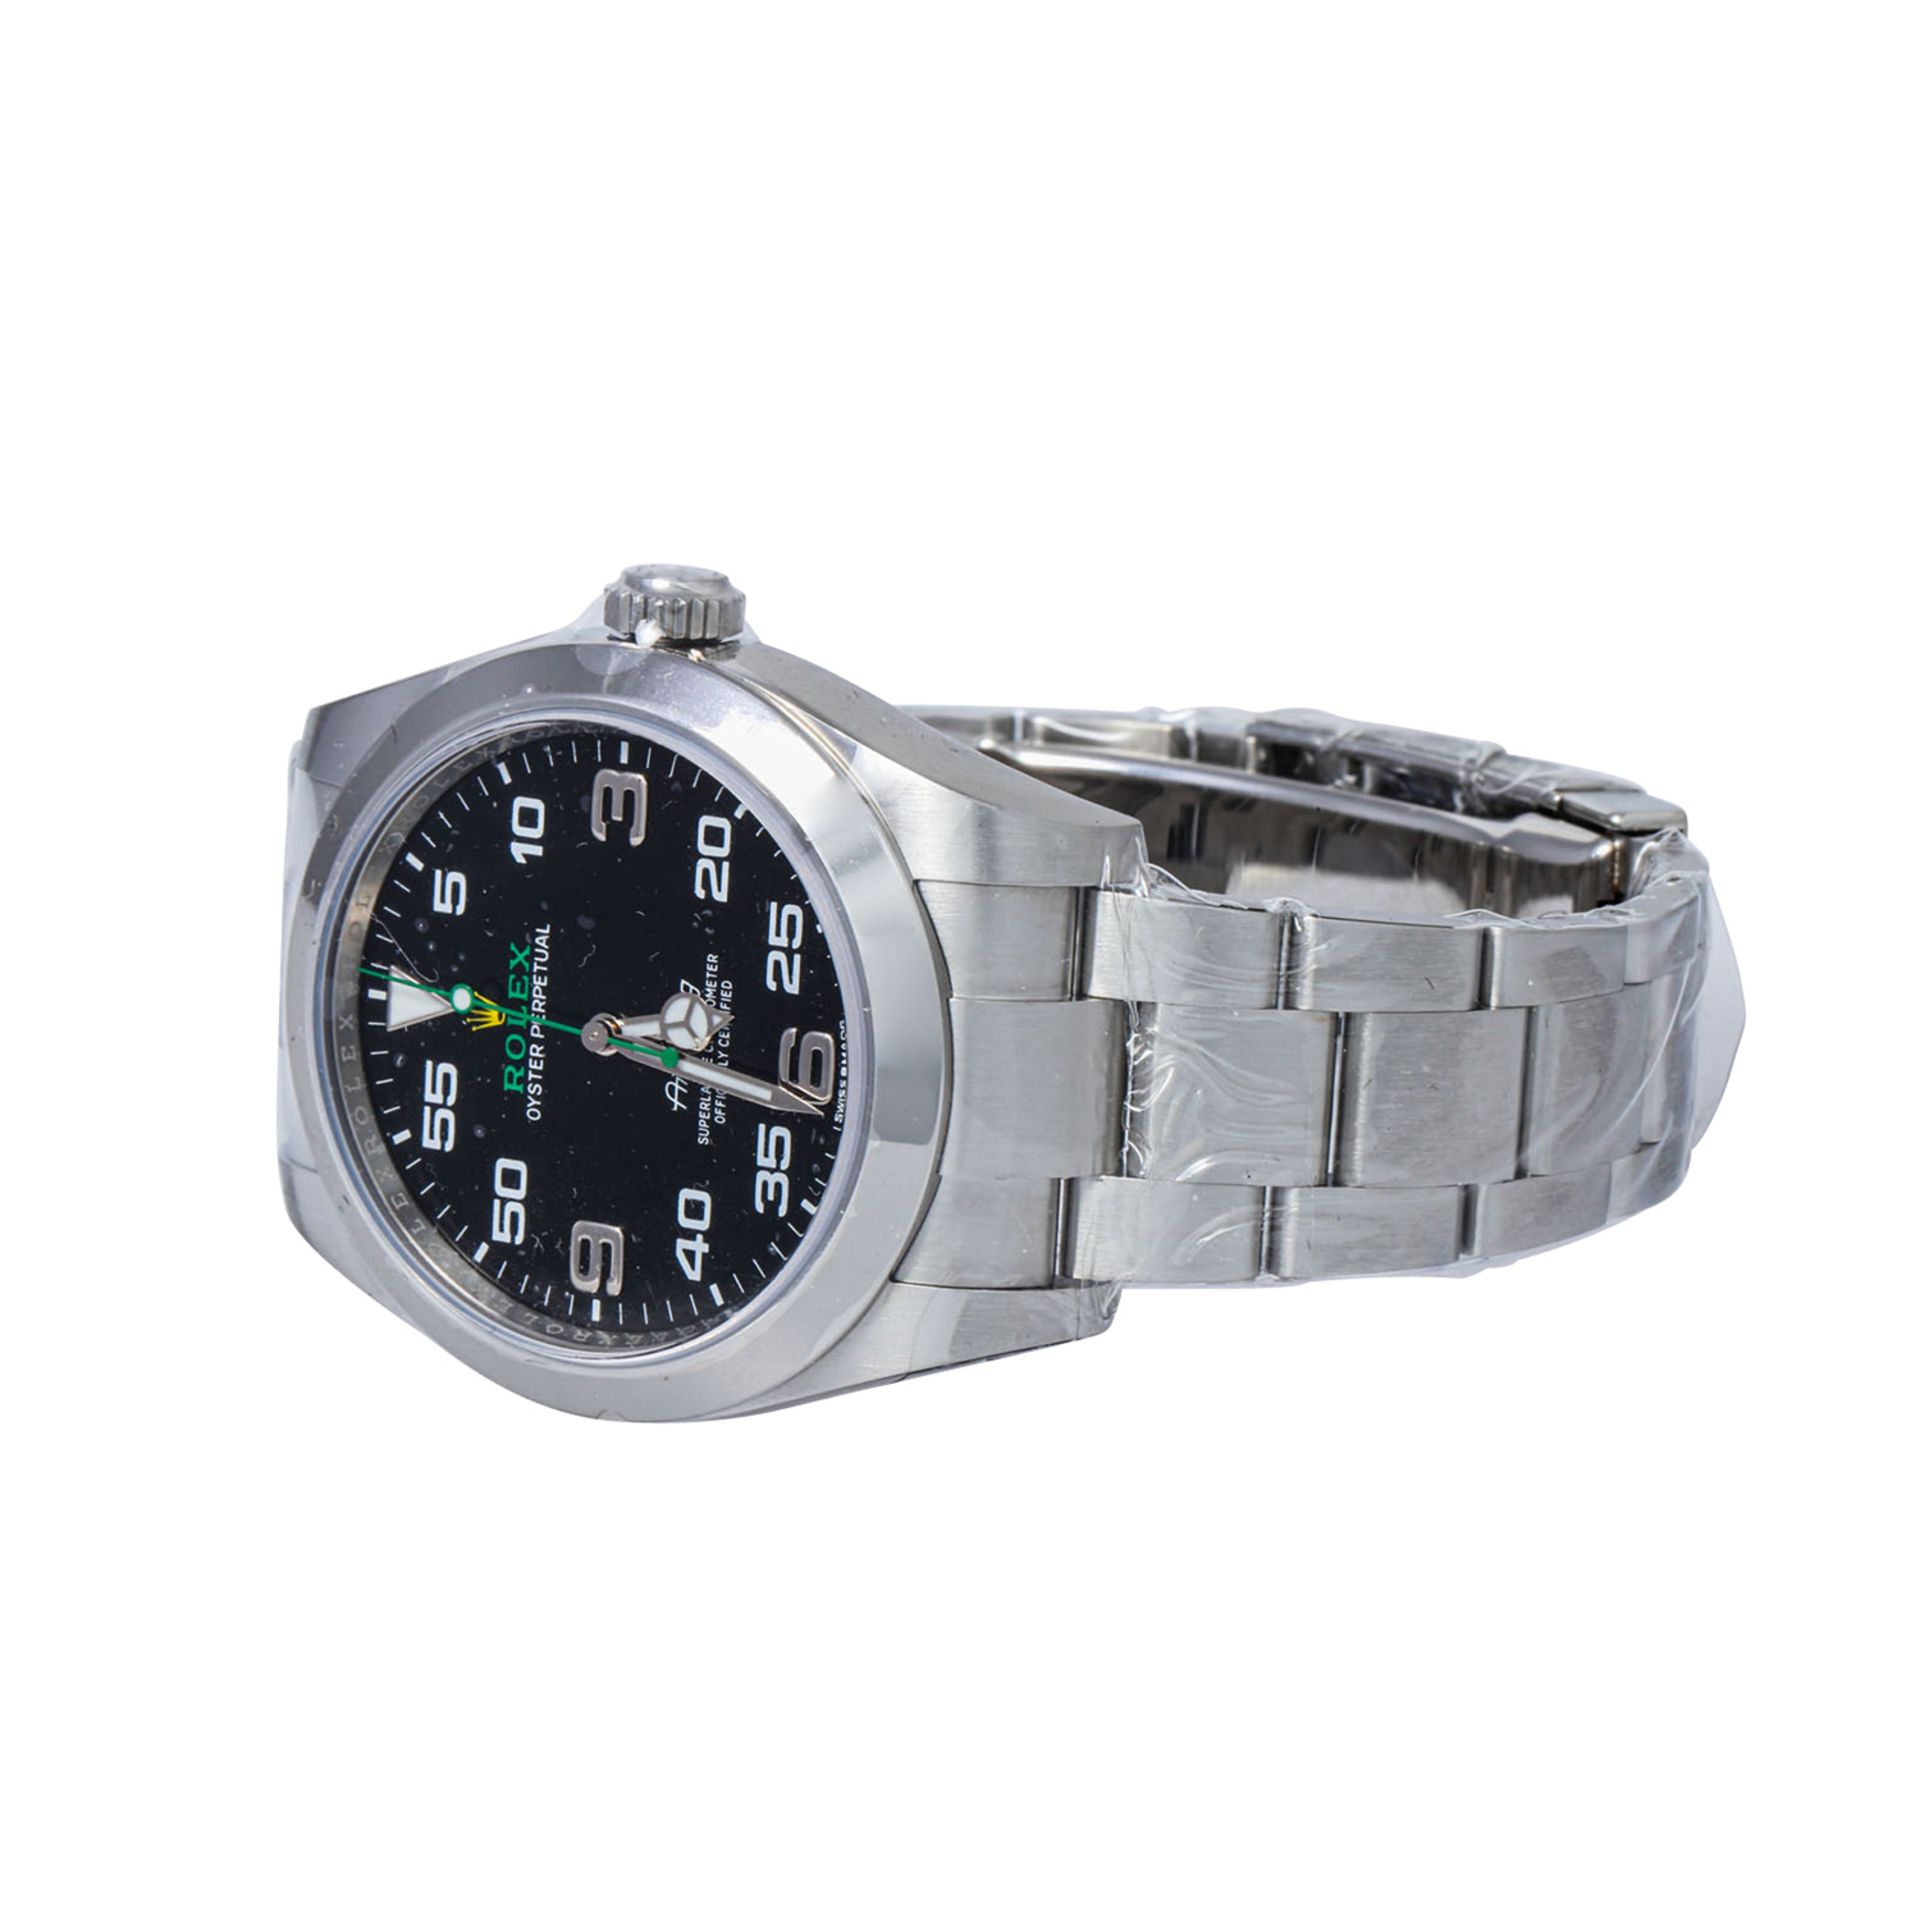 ROLEX Air King, Ref. 116900-0001. Armbanduhr. Eingestelltes Modell. - Bild 6 aus 7